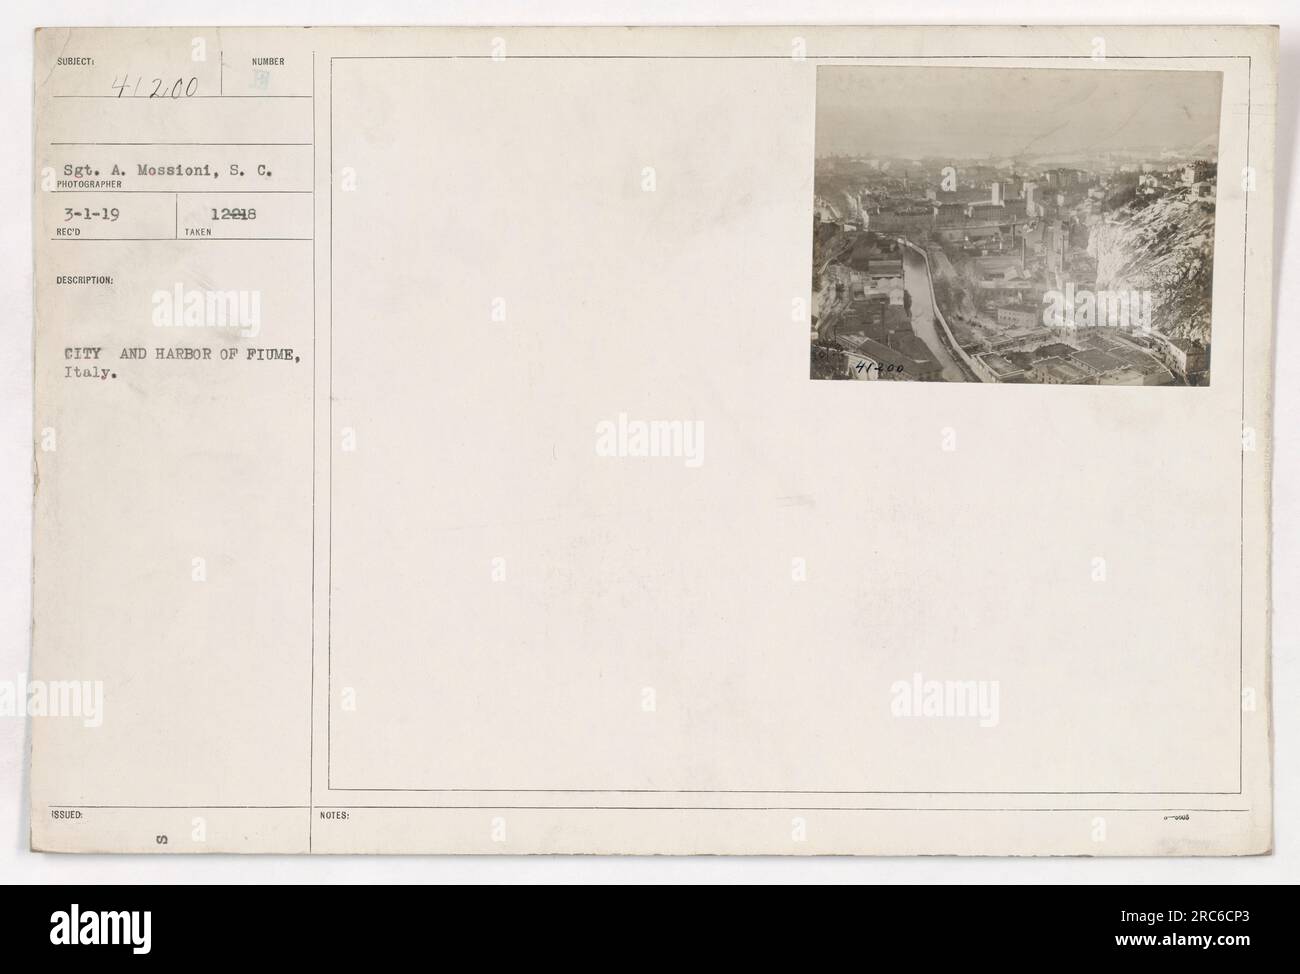 Il Sgt. A. mosse del Signal Corps scattò questa foto il 1 marzo 1919. Raffigura la città e il porto di fiume in Italia. L'immagine mostra il paesaggio urbano e le attività marittime nel porto. Foto Stock